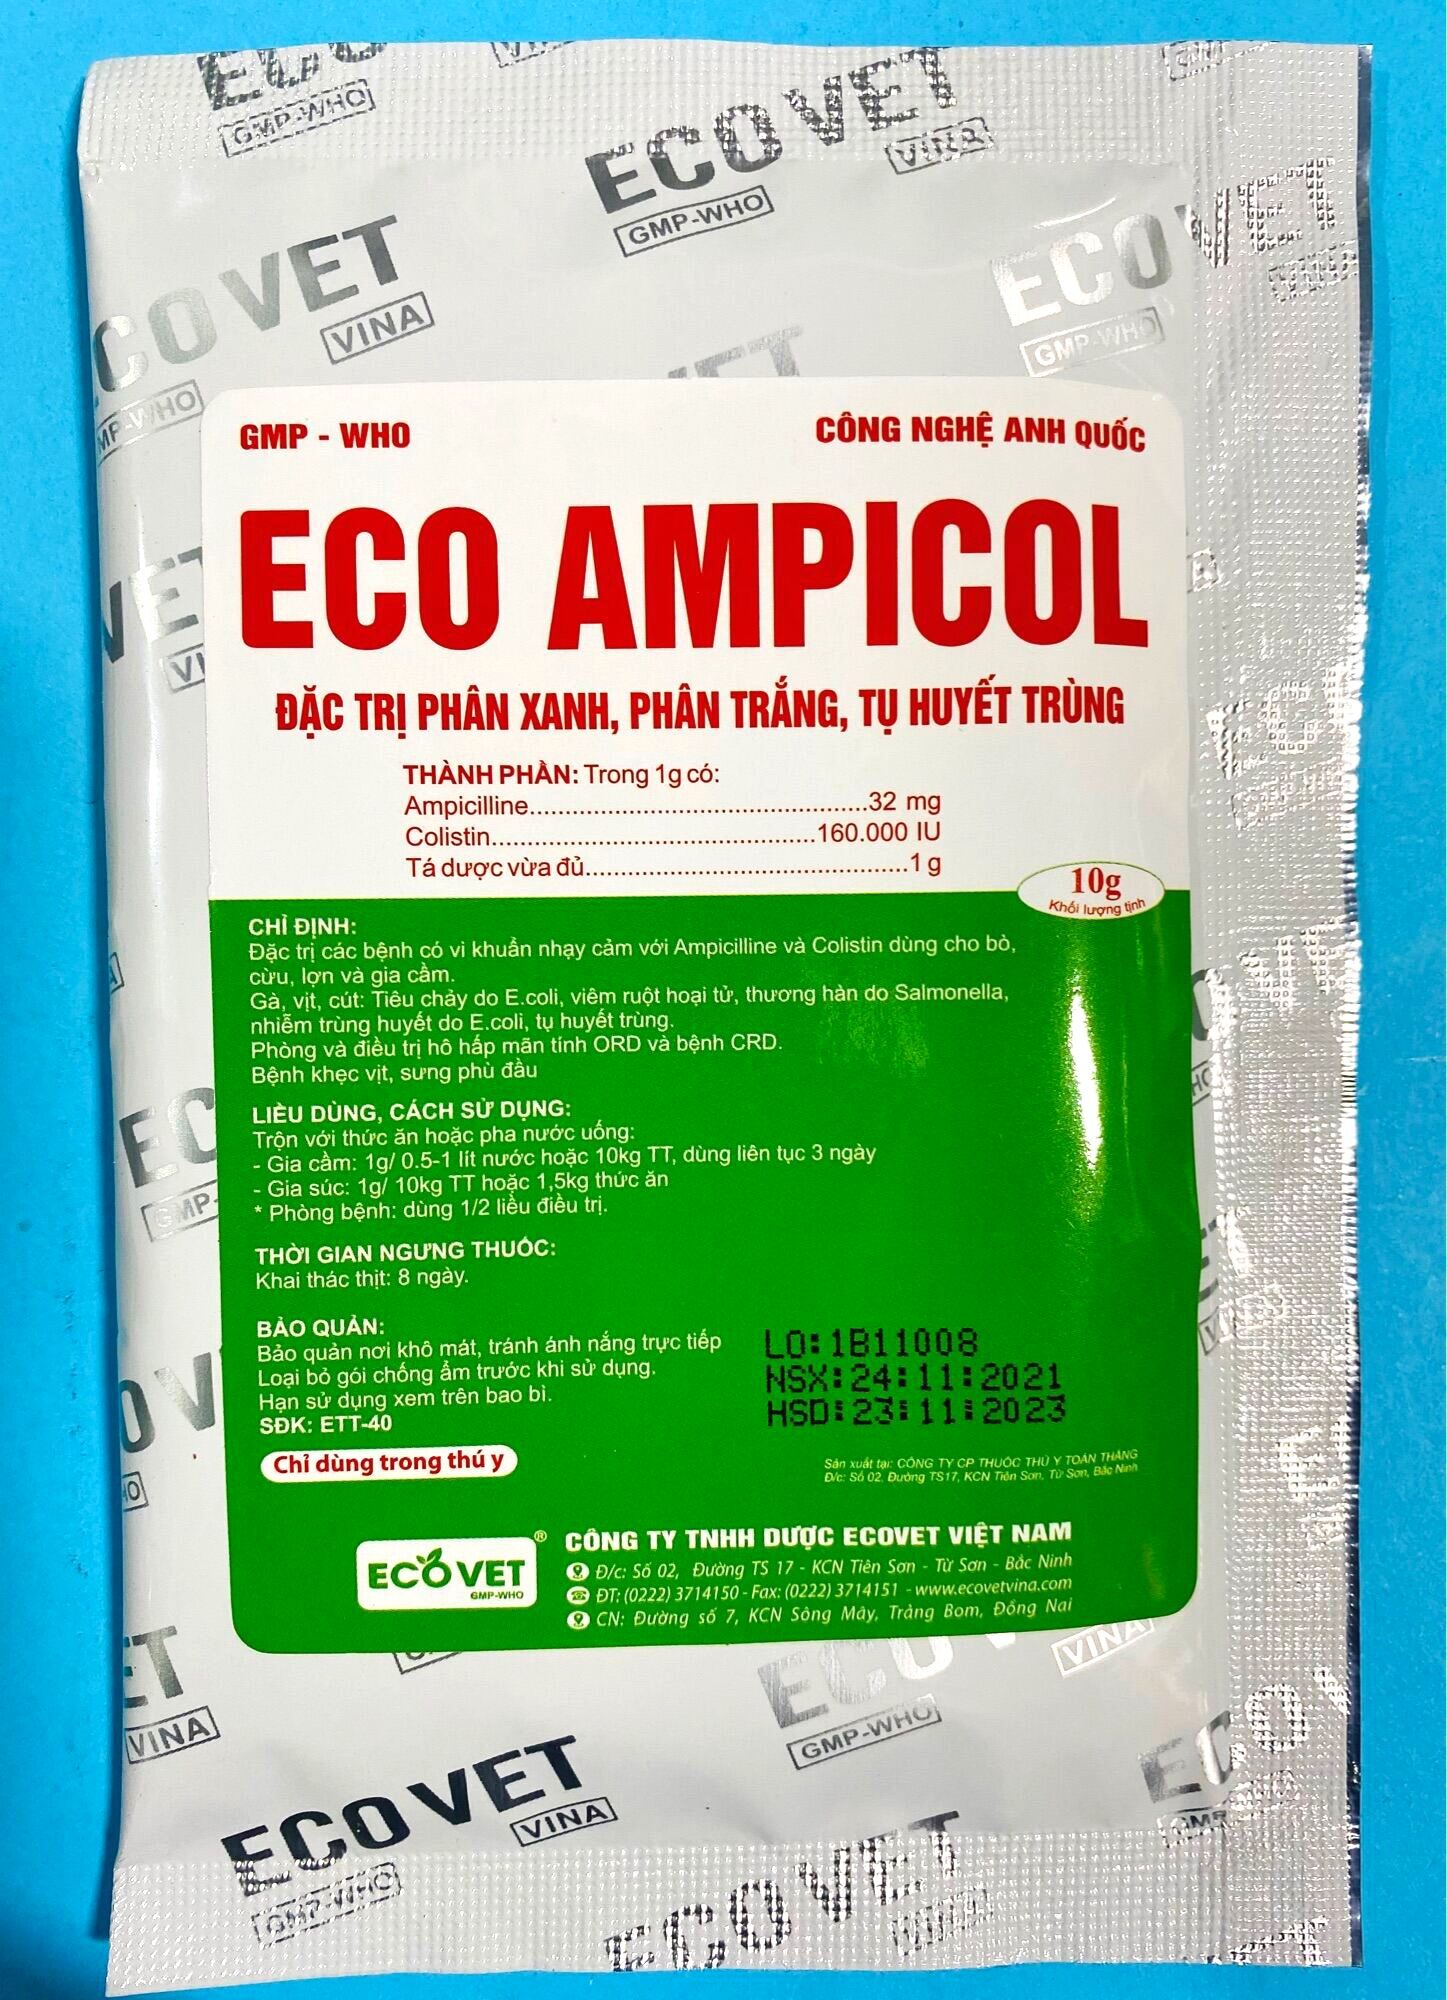 Eco Ampicol: Sản phẩm vi sinh học Eco Ampicol là lựa chọn số 1 cho bảo vệ sức khỏe của mỗi gia đình. Với ưu điểm từ thiên nhiên, không chứa hóa chất độc hại, sản phẩm này là lời giải đáp cho những lo lắng về an toàn thực phẩm và sức khỏe. Hãy xem hình ảnh liên quan để tìm hiểu thêm về các thành phần cùng công dụng của sản phẩm.